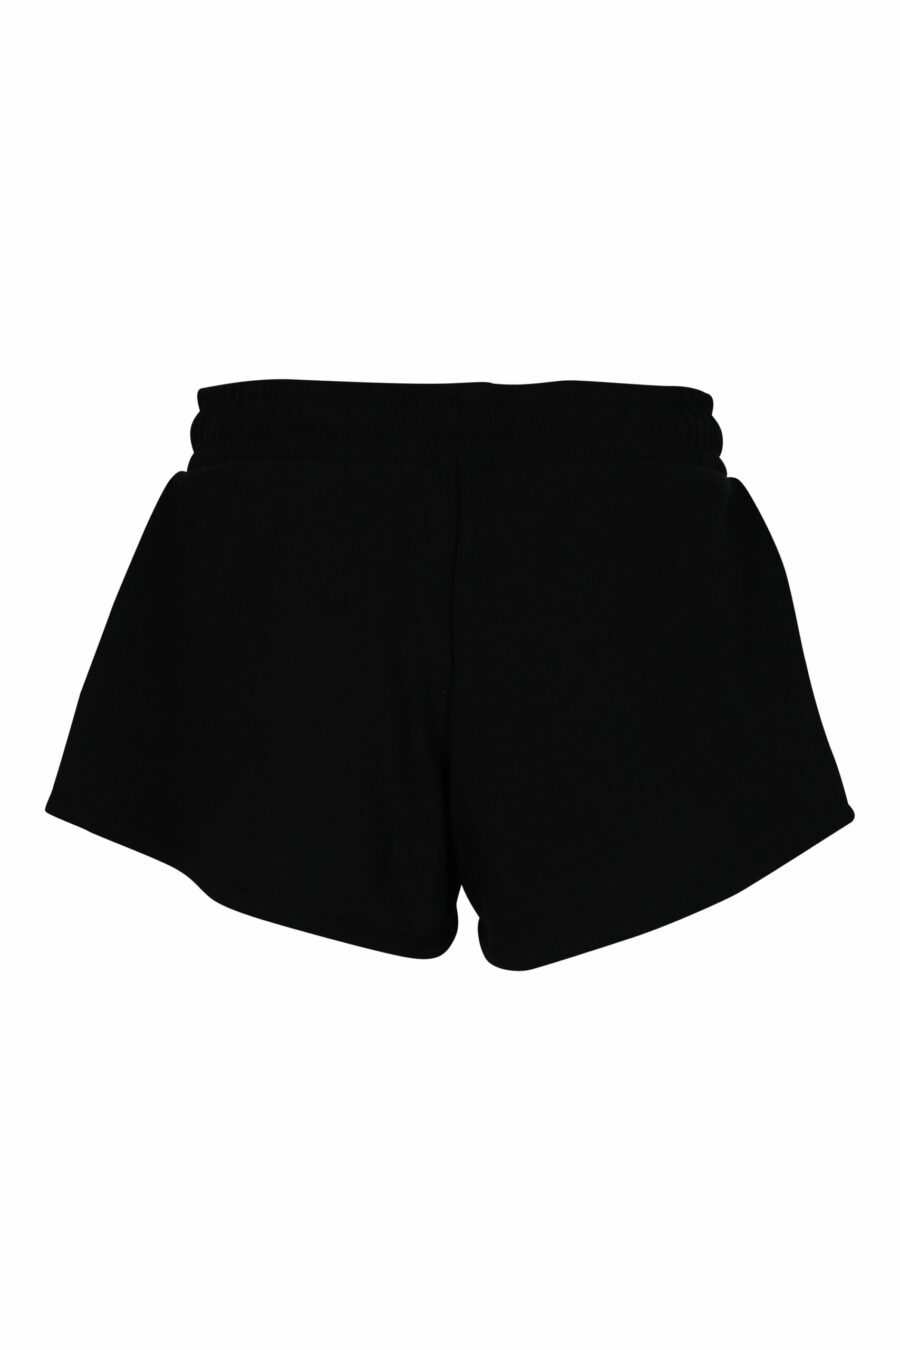 Black shorts with multicoloured mini-logo - 667113355924 1 scaled